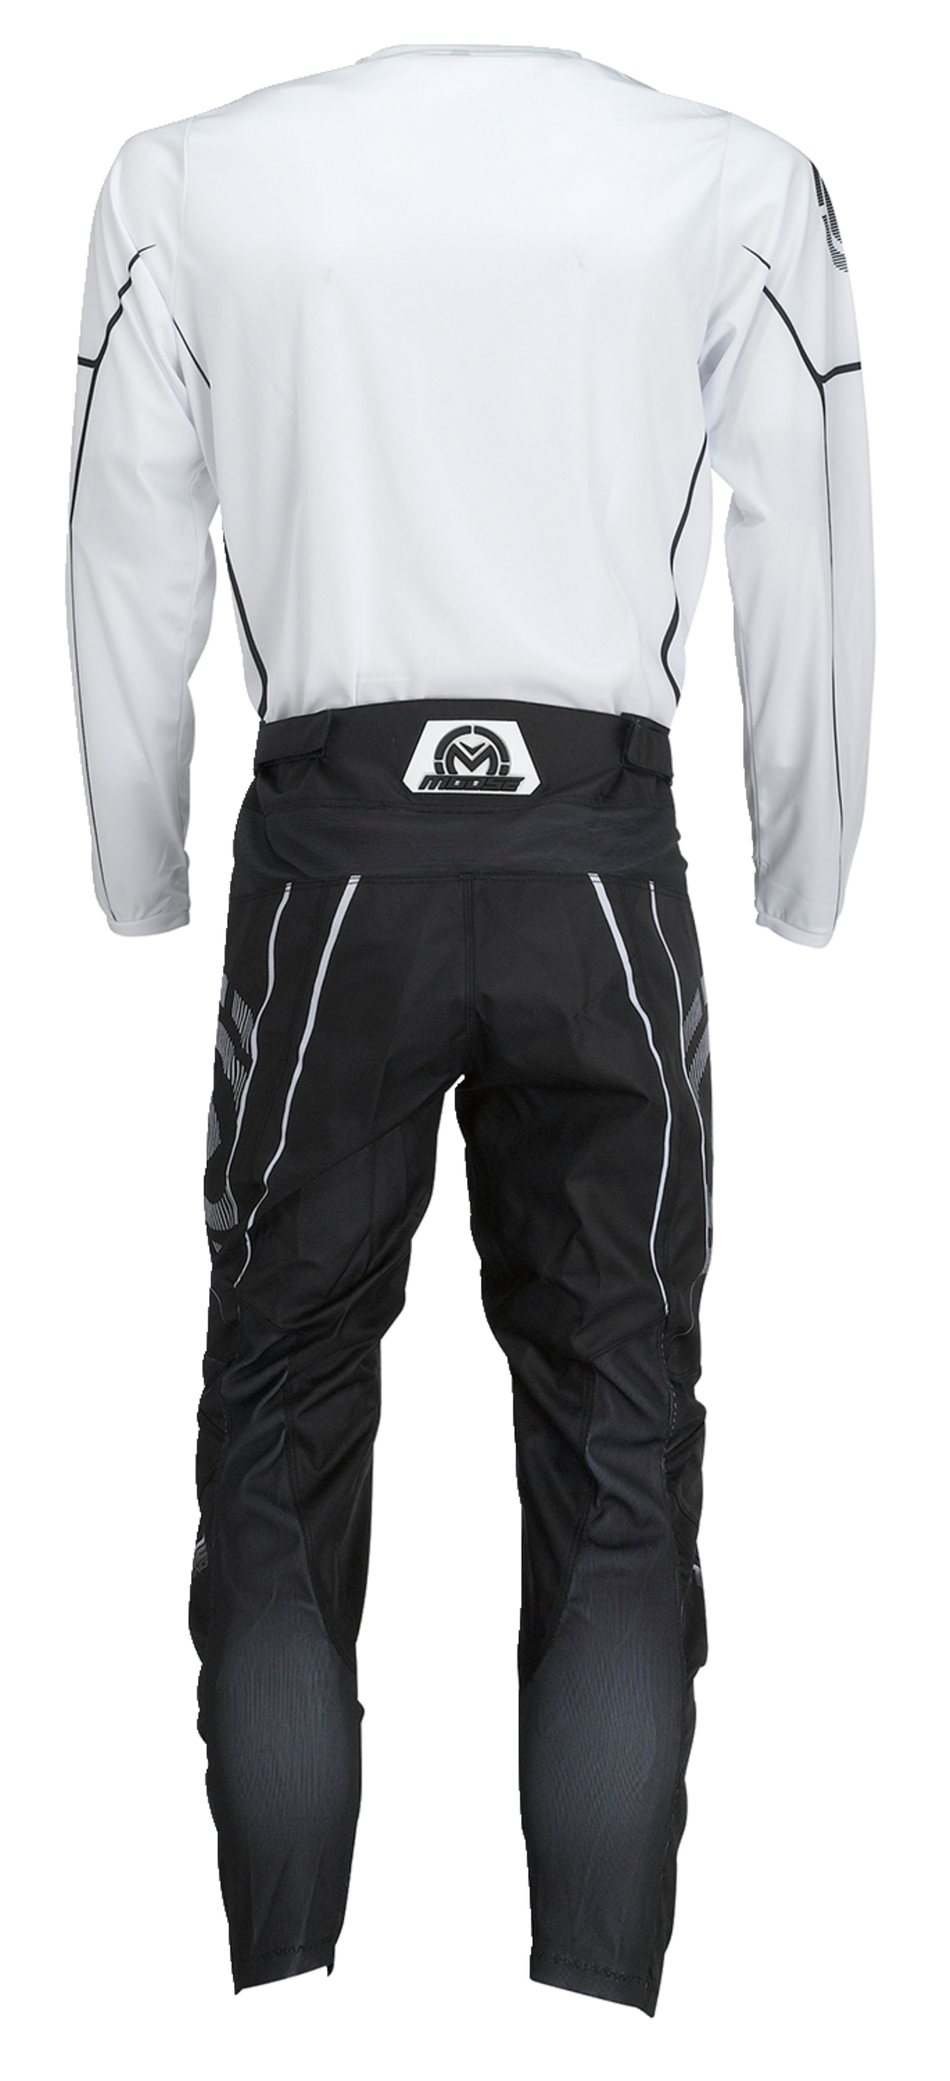 MOOSE RACING Qualifier® Jersey - Black/White - Medium 2910-7189